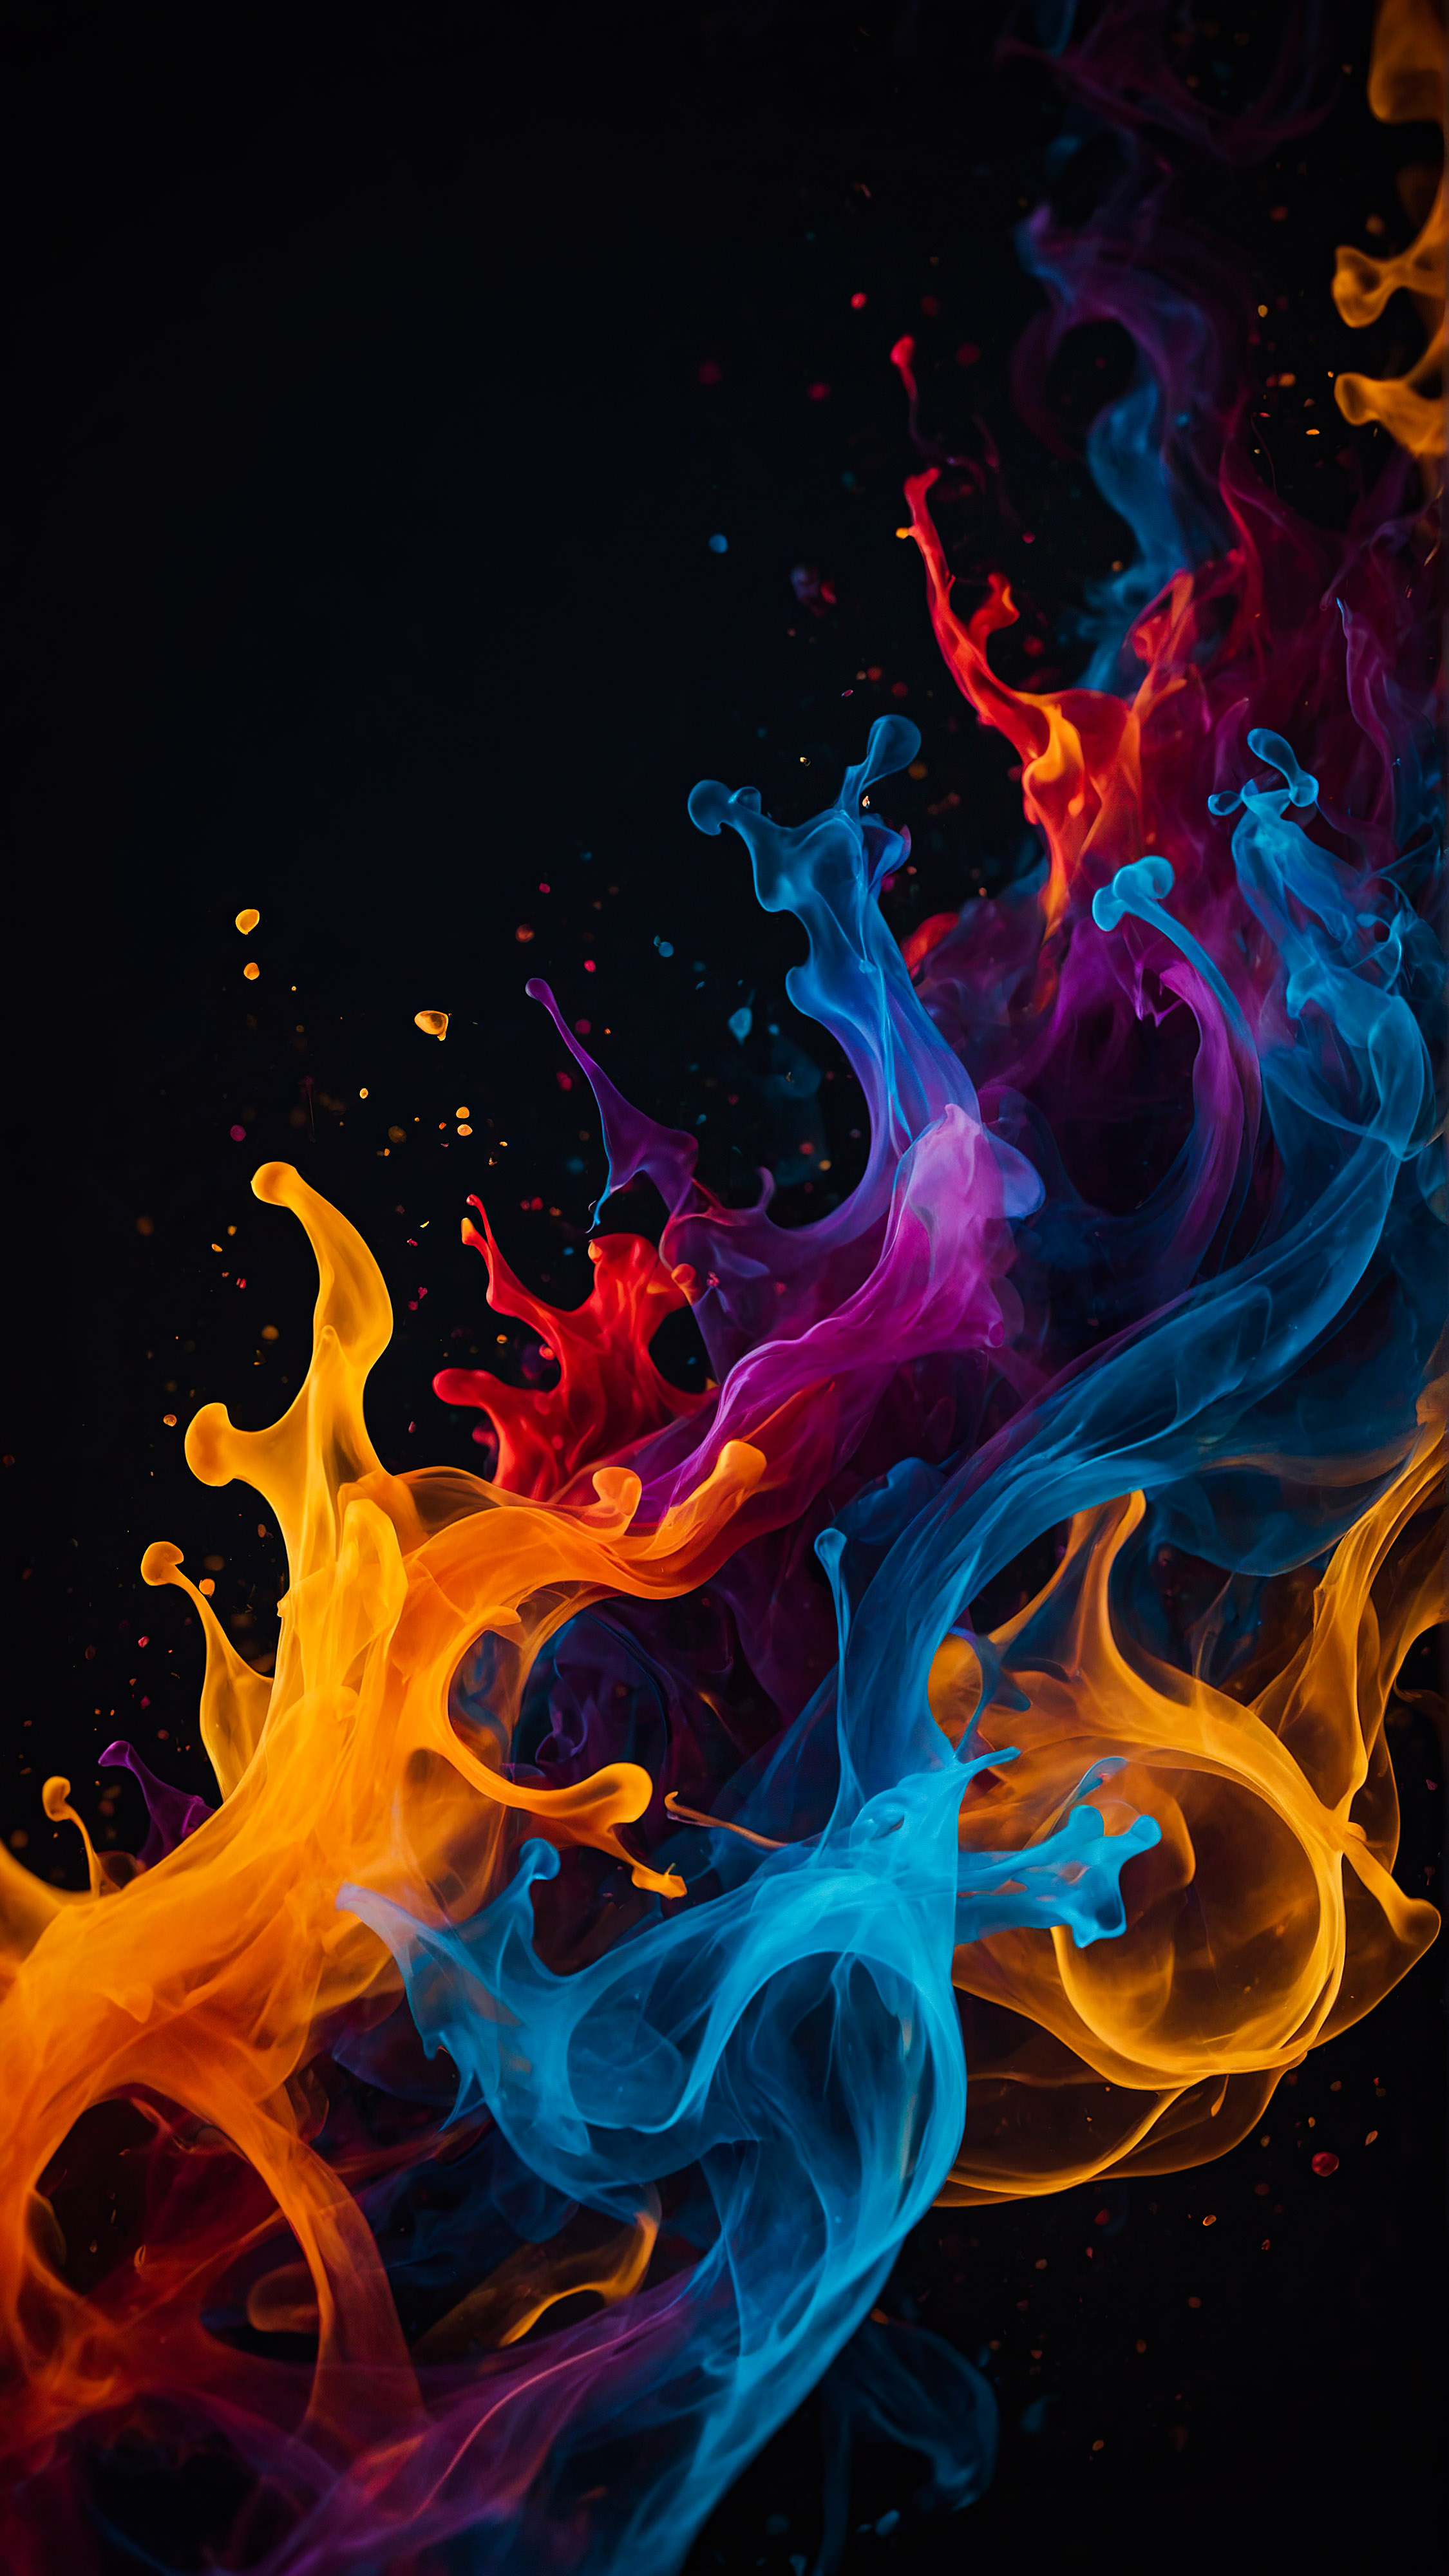 Ressentez le mouvement et l'énergie avec notre fond d'écran iPhone noir en 4K gratuit, présentant des formes abstraites entrelacées qui ressemblent à des flammes colorées sur un fond sombre.